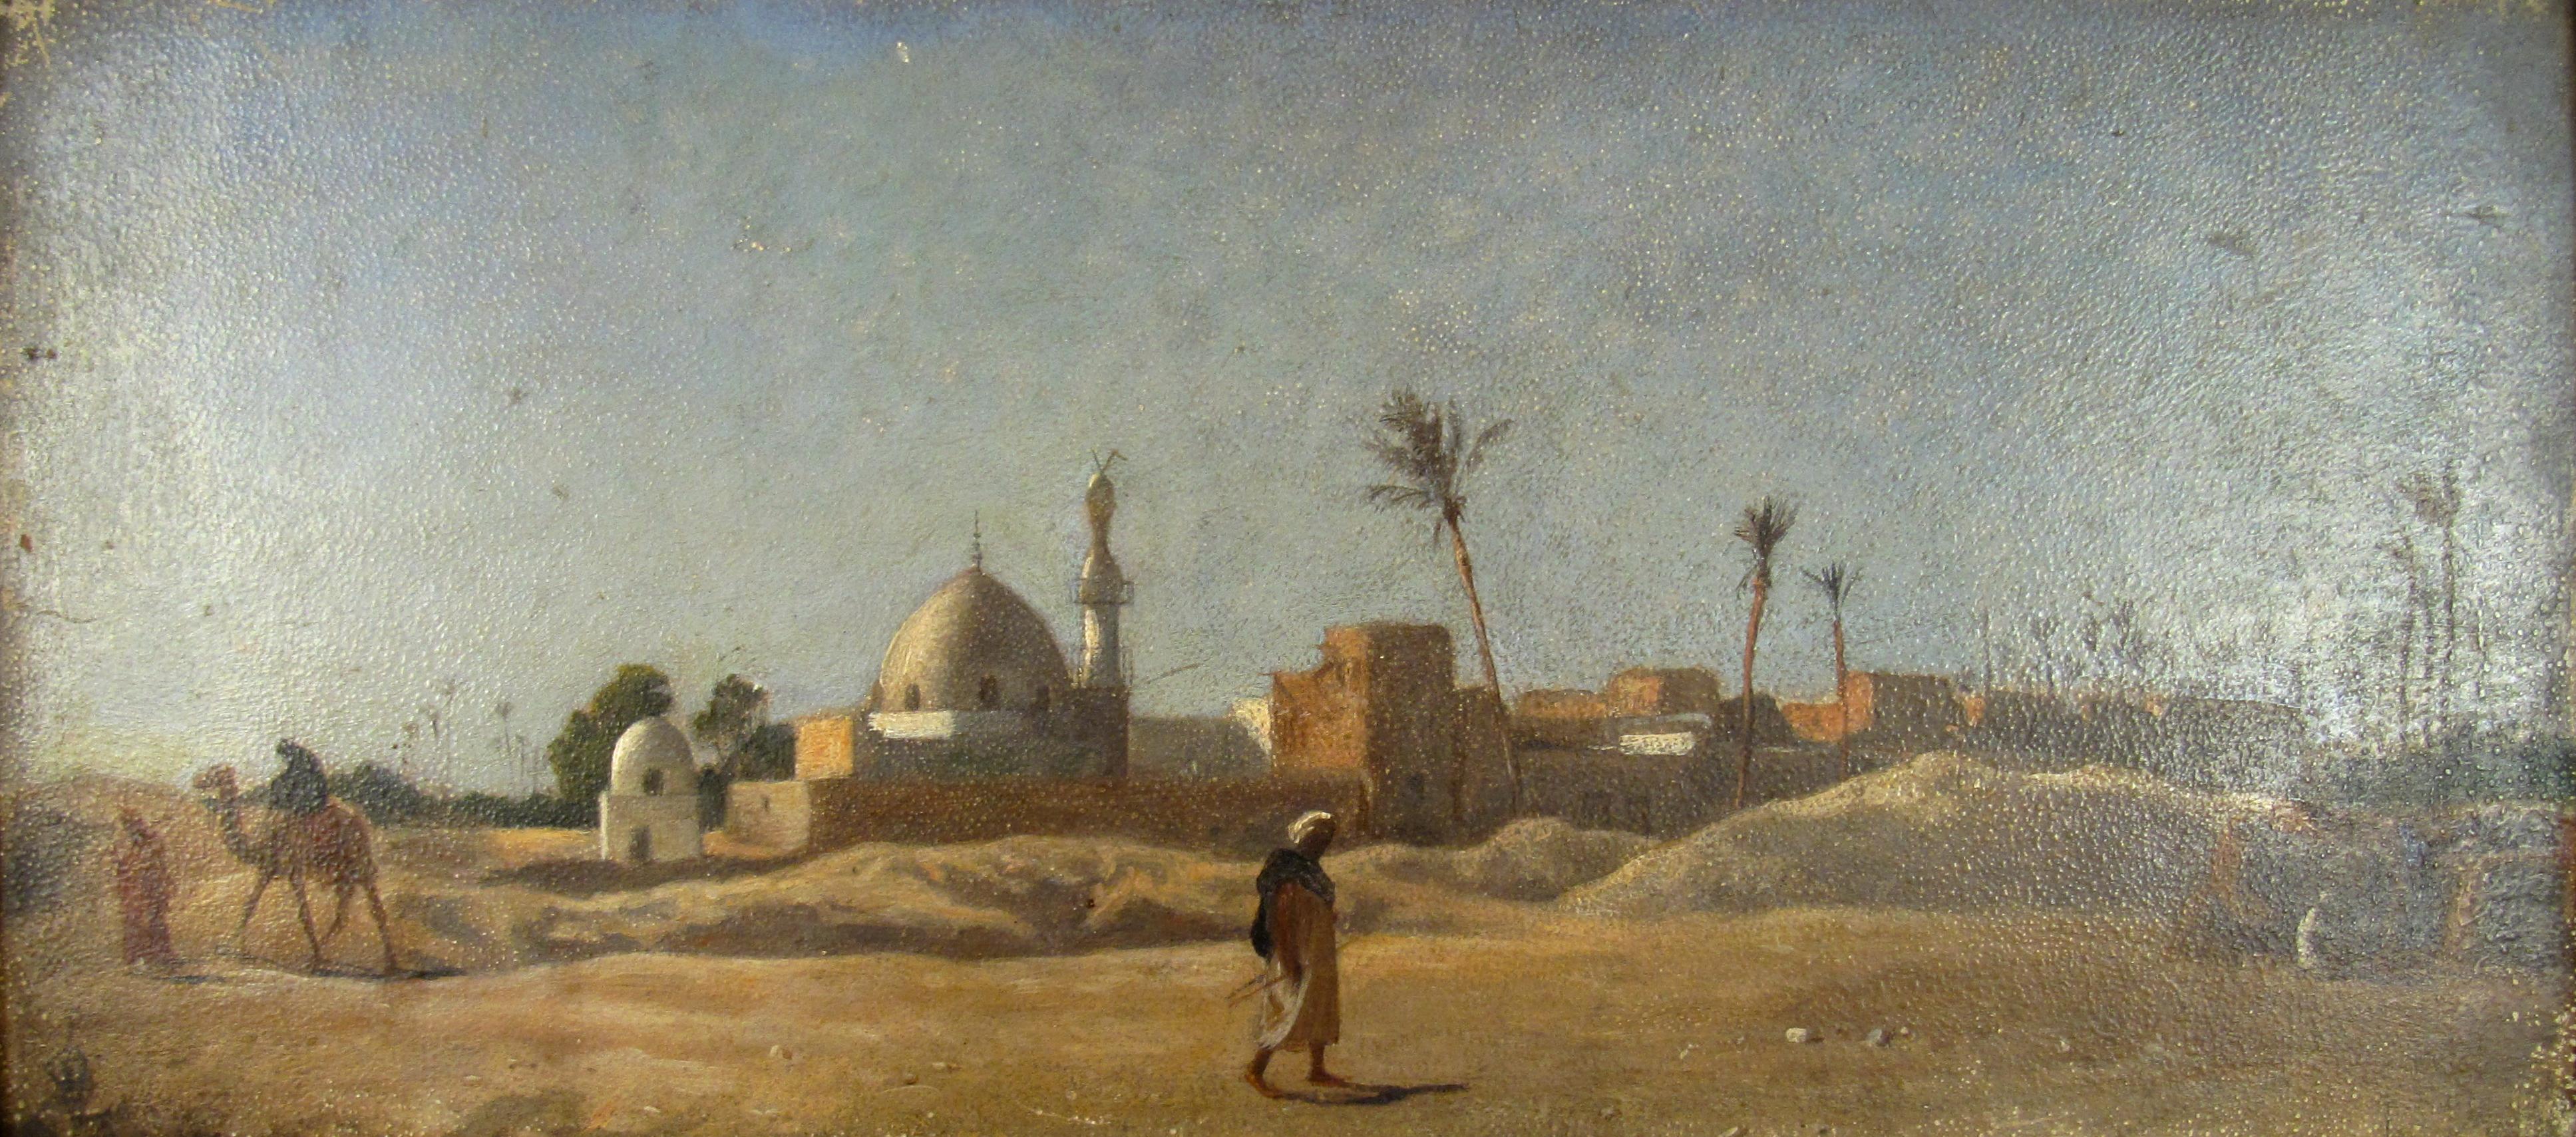 desert village art